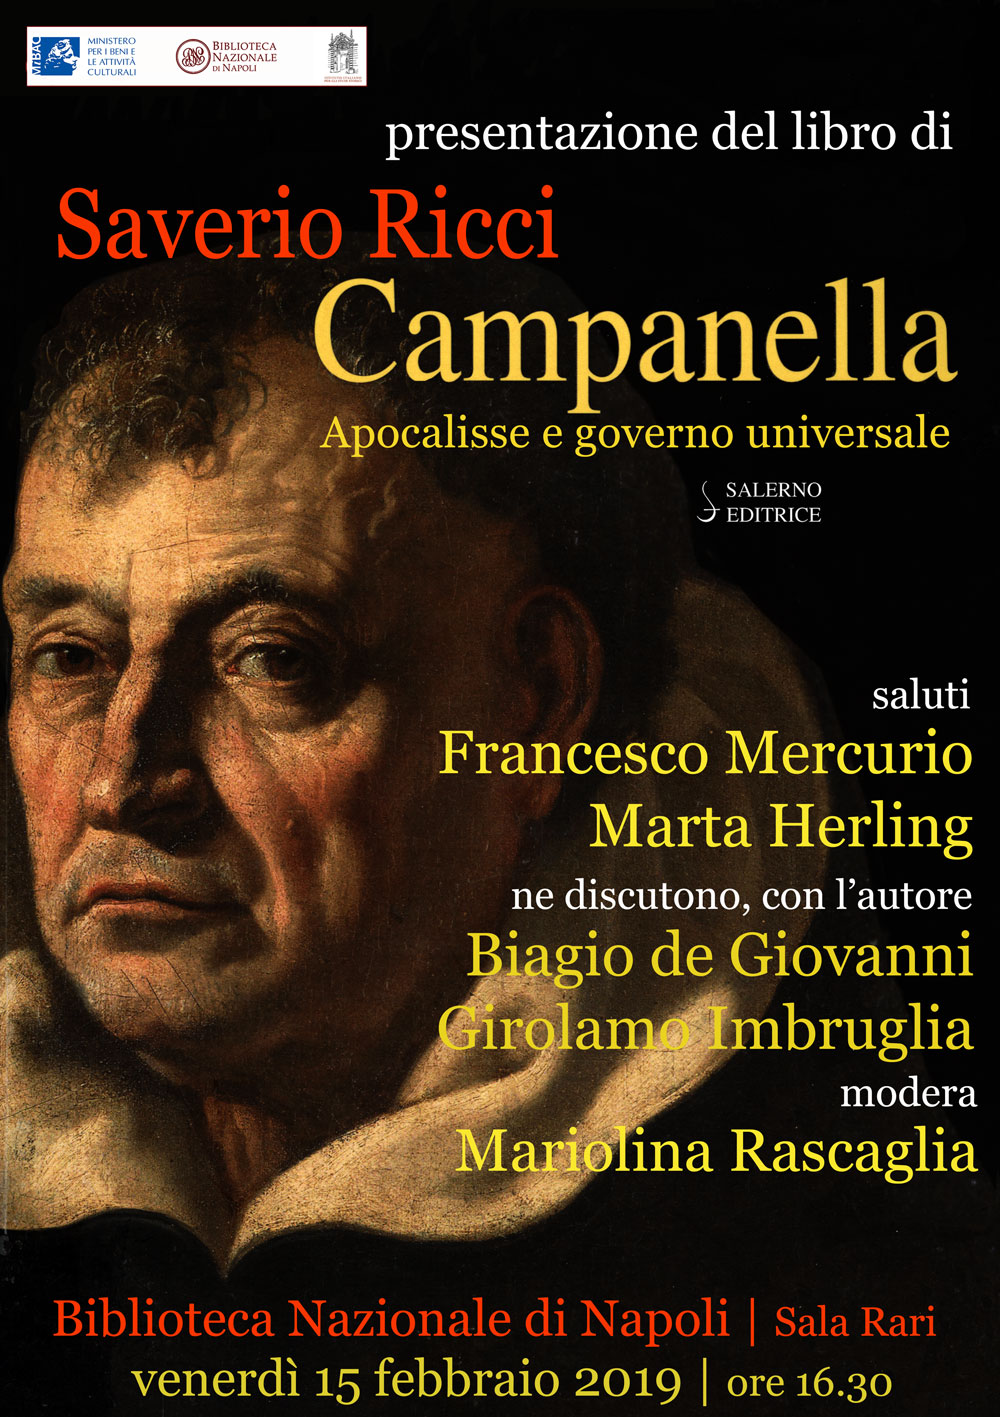 Presentazione del libro Campanella. Apocalisse e governo universale. Venerdì 15 febbraio ore 16.30 – Biblioteca Nazionale di Napoli